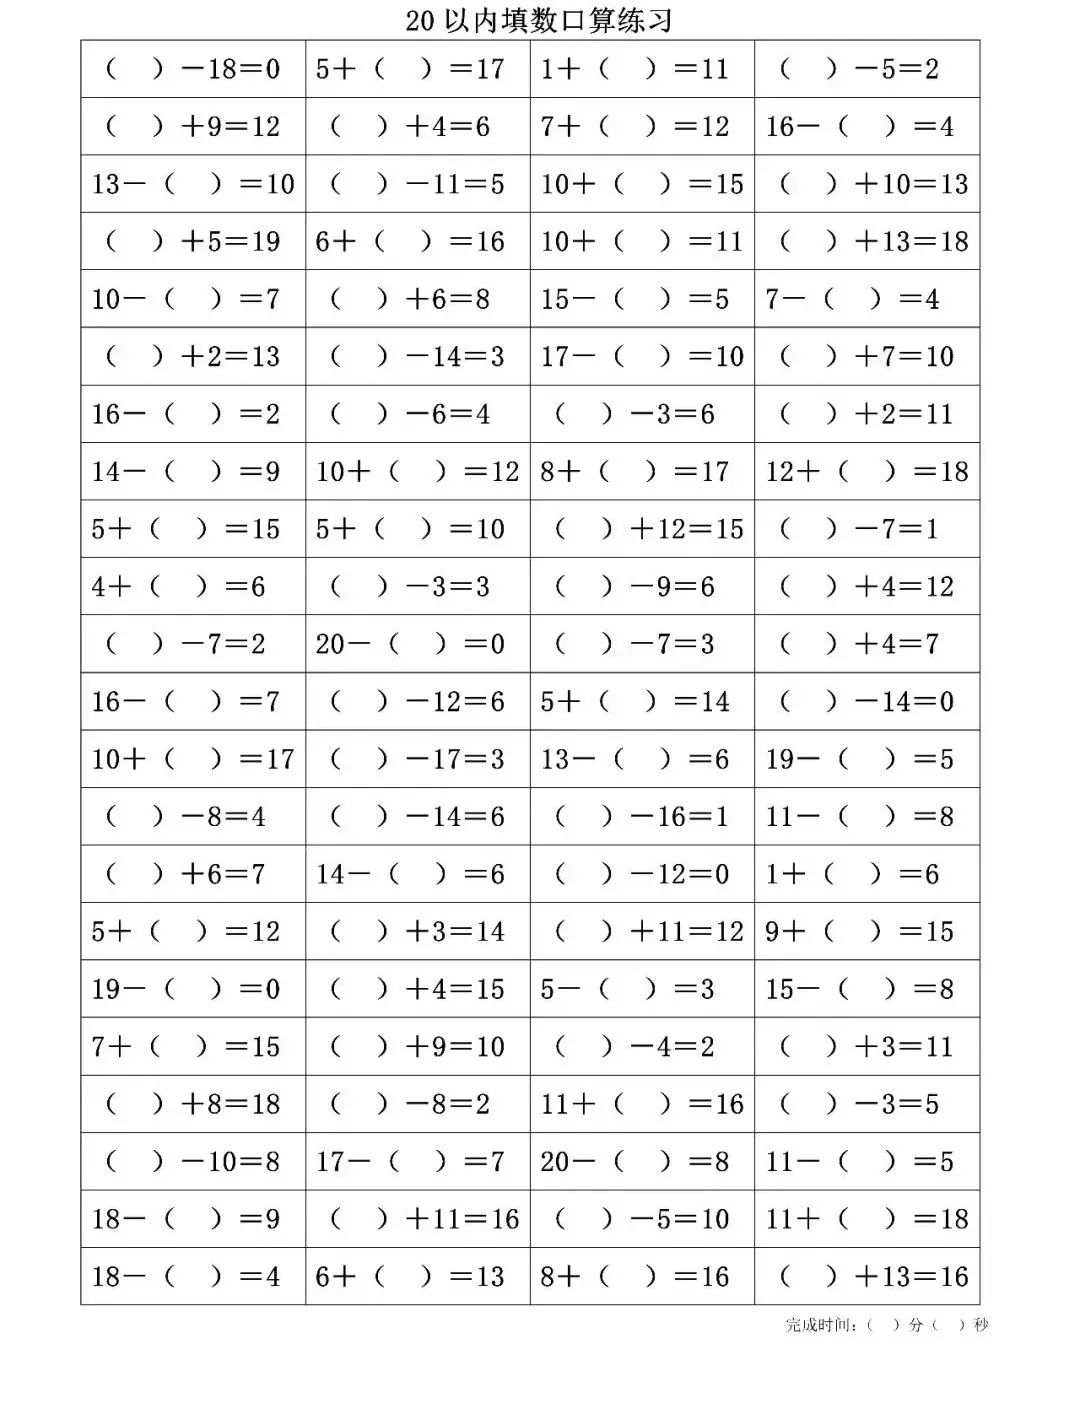 一年级下册数学20以内口算填数练习,可打印